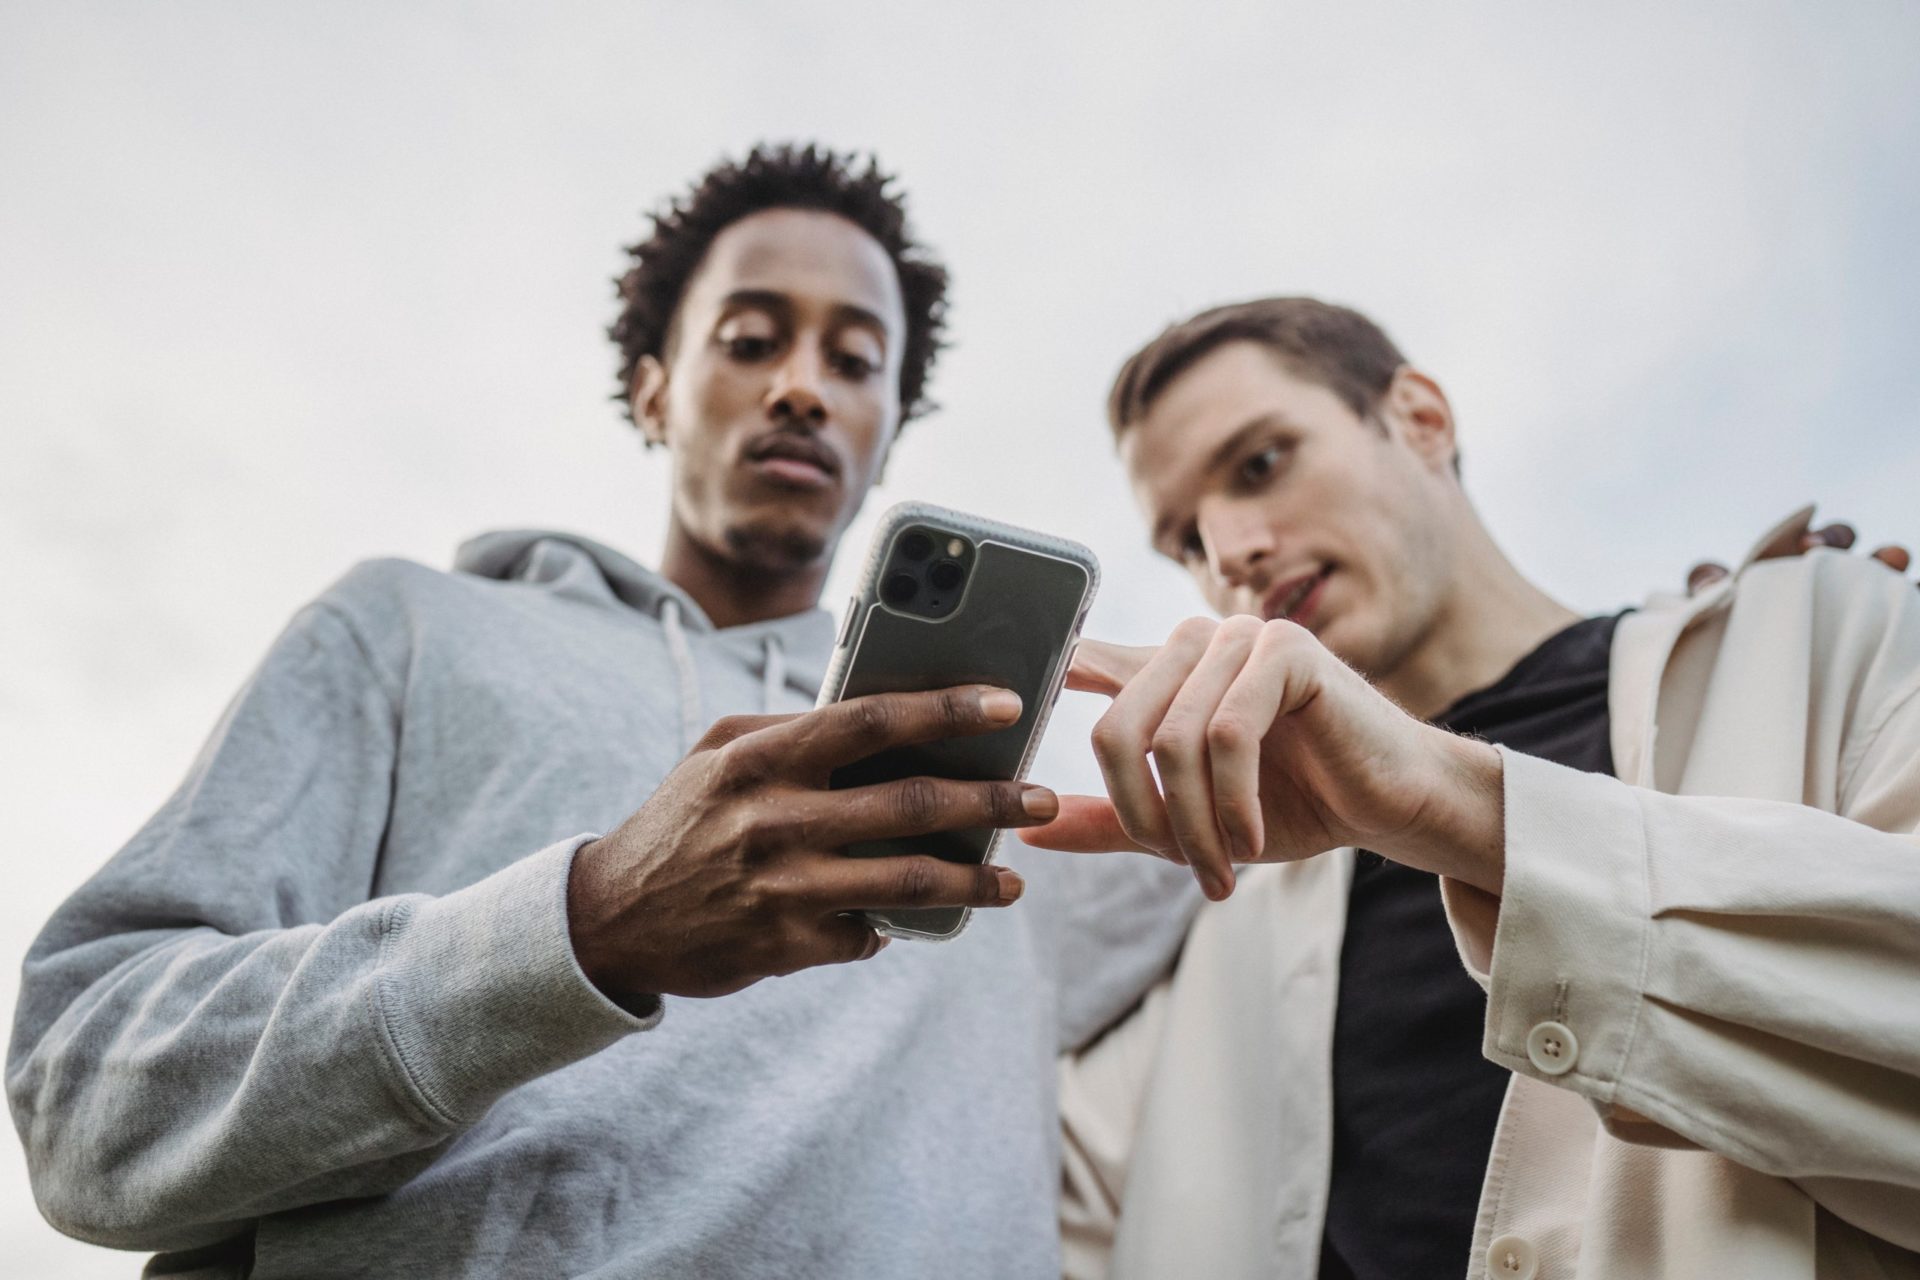 Zwei junge Männer, die gemeinsam auf ein Smartphone schauen.